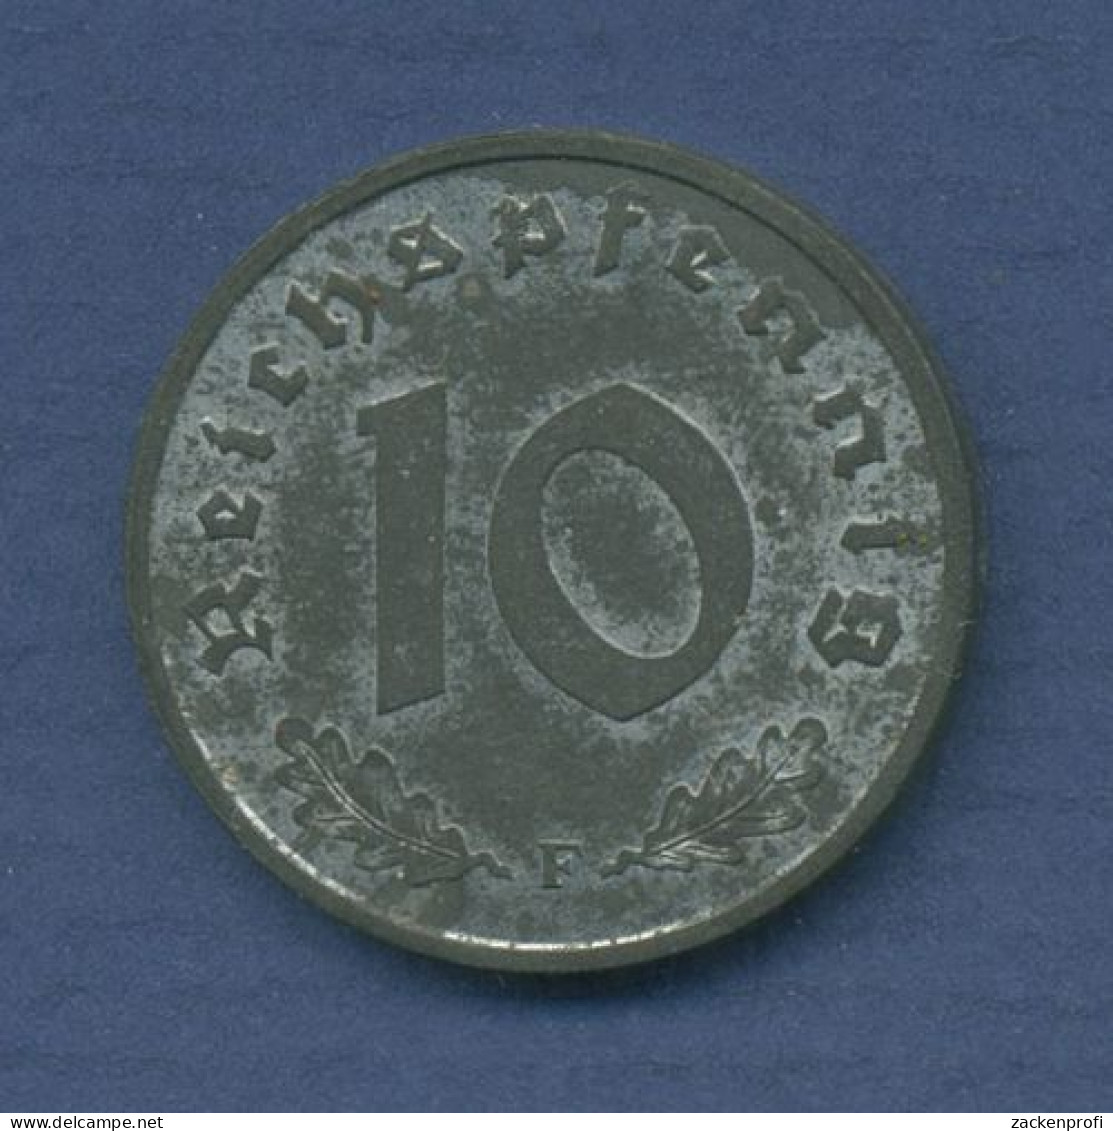 Alliierte Besetzung 10 Reichspfennig 1948 F, J 375, Vz (m3530) - 10 Reichspfennig